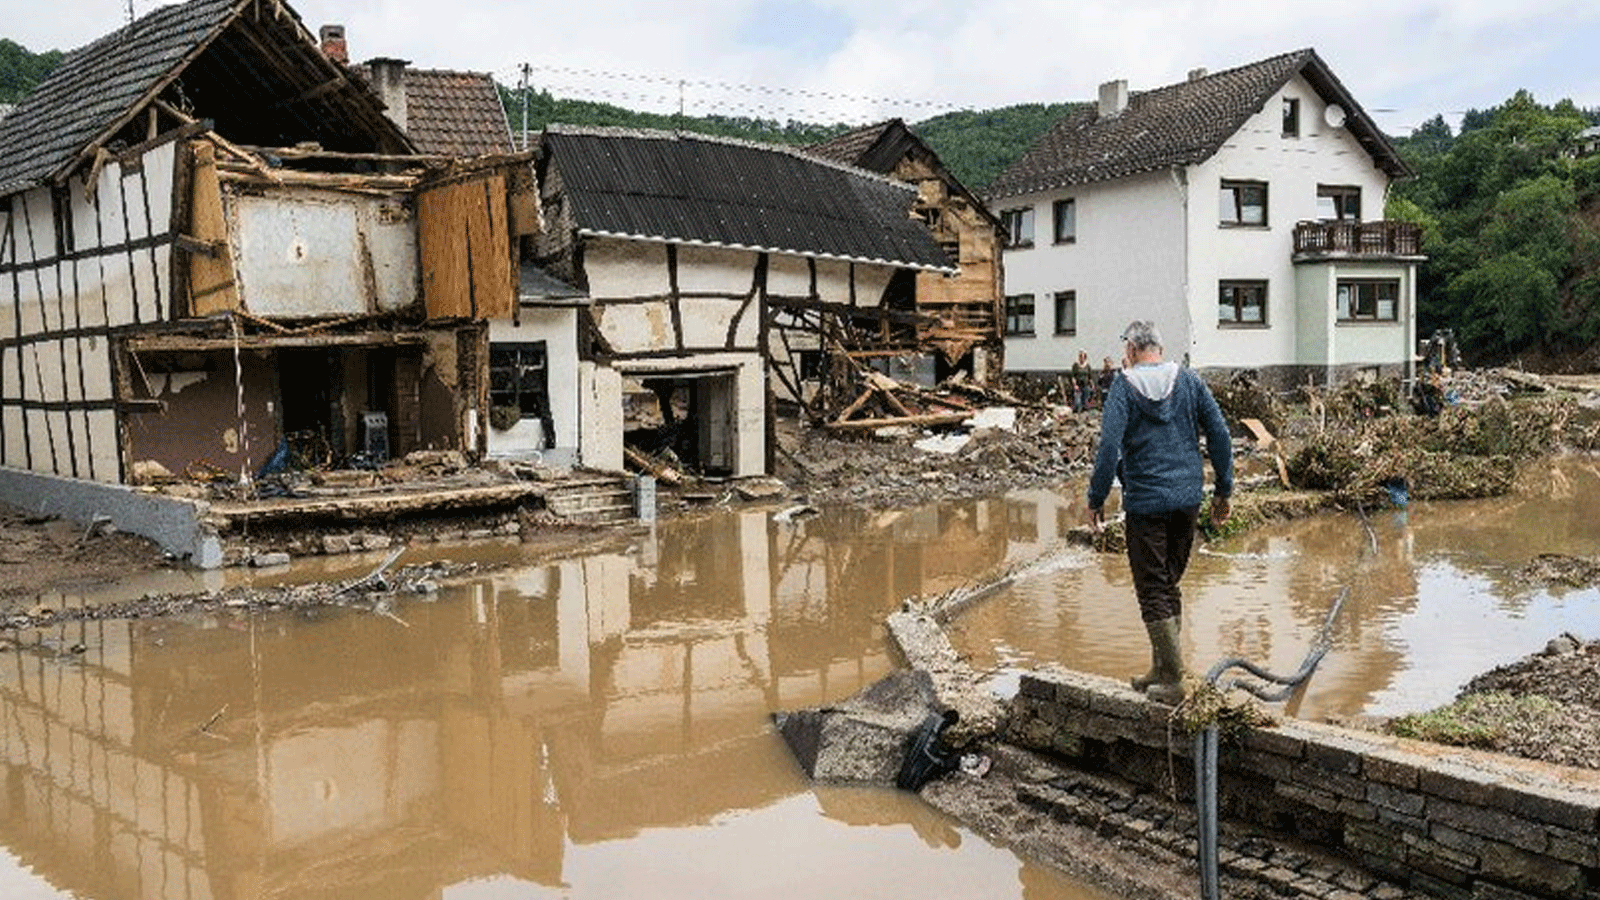 الأمطار الغزيرة والفيضانات التي ضربت أوروبا الغربية تسببت في مقتل 59 شخصًا على الأقل في ألمانيا وثمانية في بلجيكا 